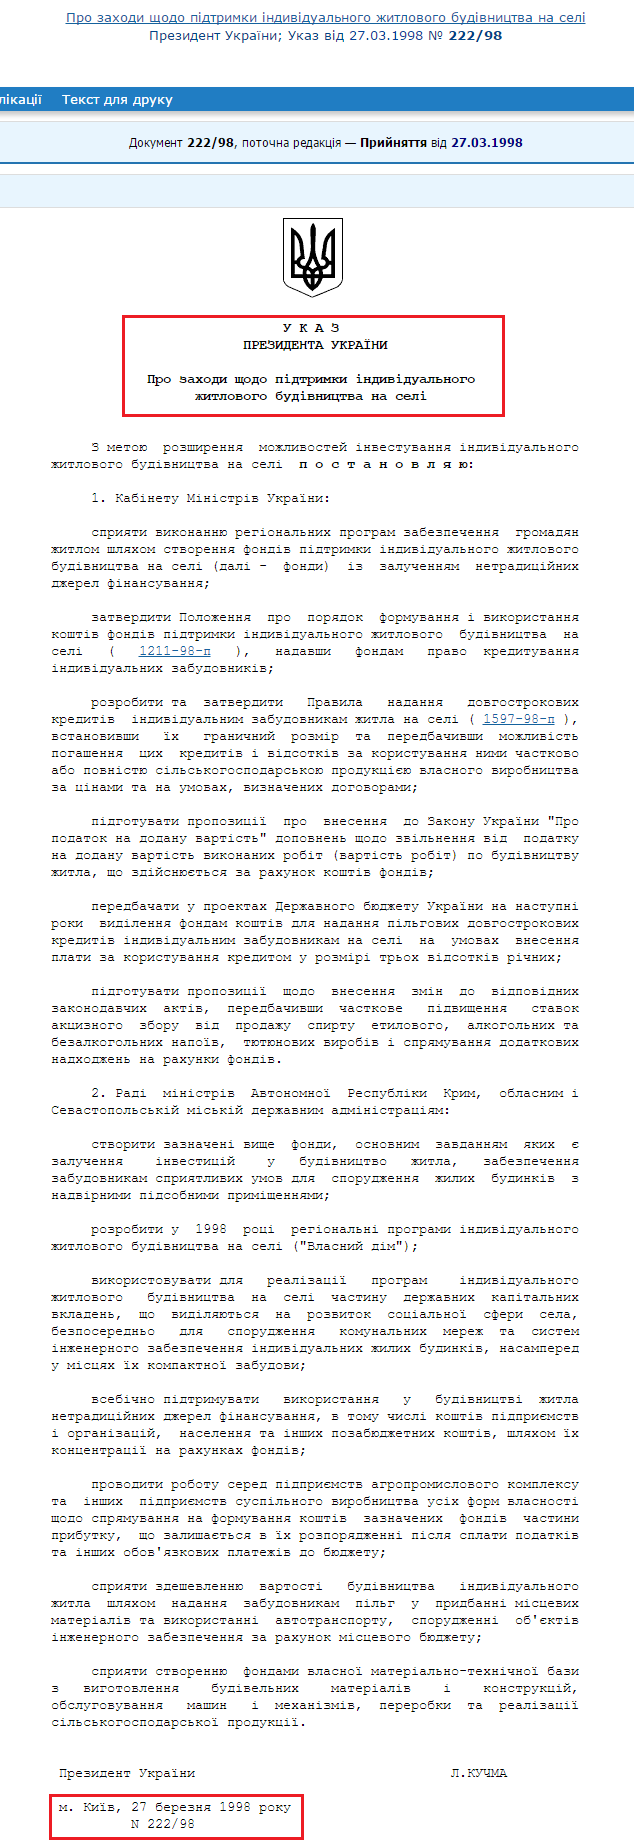 http://zakon3.rada.gov.ua/laws/show/222/98